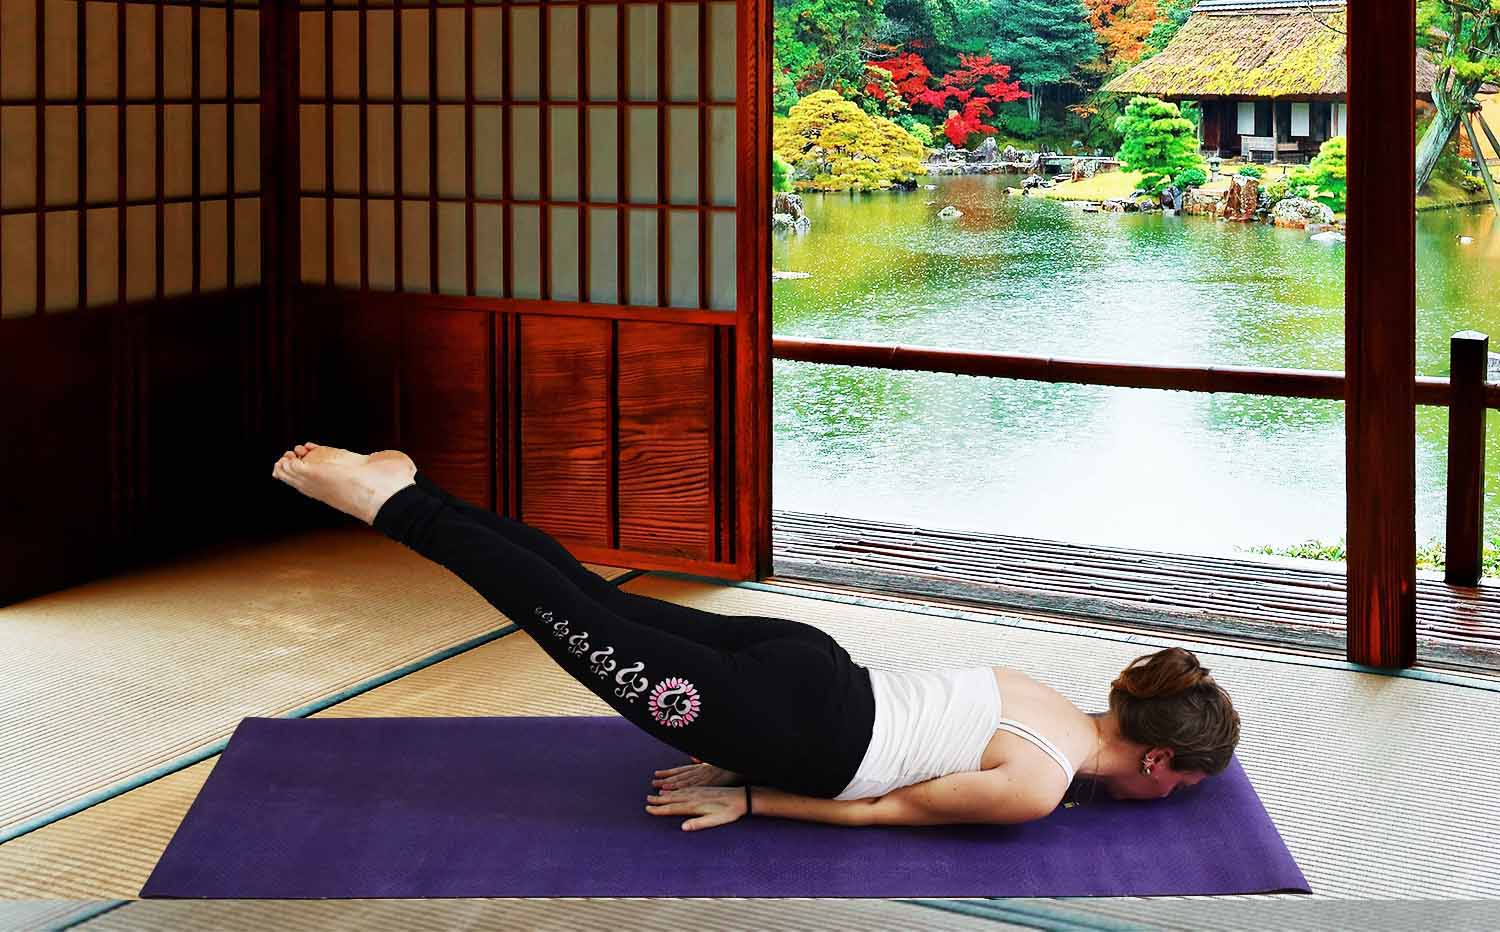 Magasin yoga strasbourg - Yogini faisant la posture de la sauterelle avec un legging yoga Asana sur un tapis de yoga toie de jute violet dans un temple bouddhiste